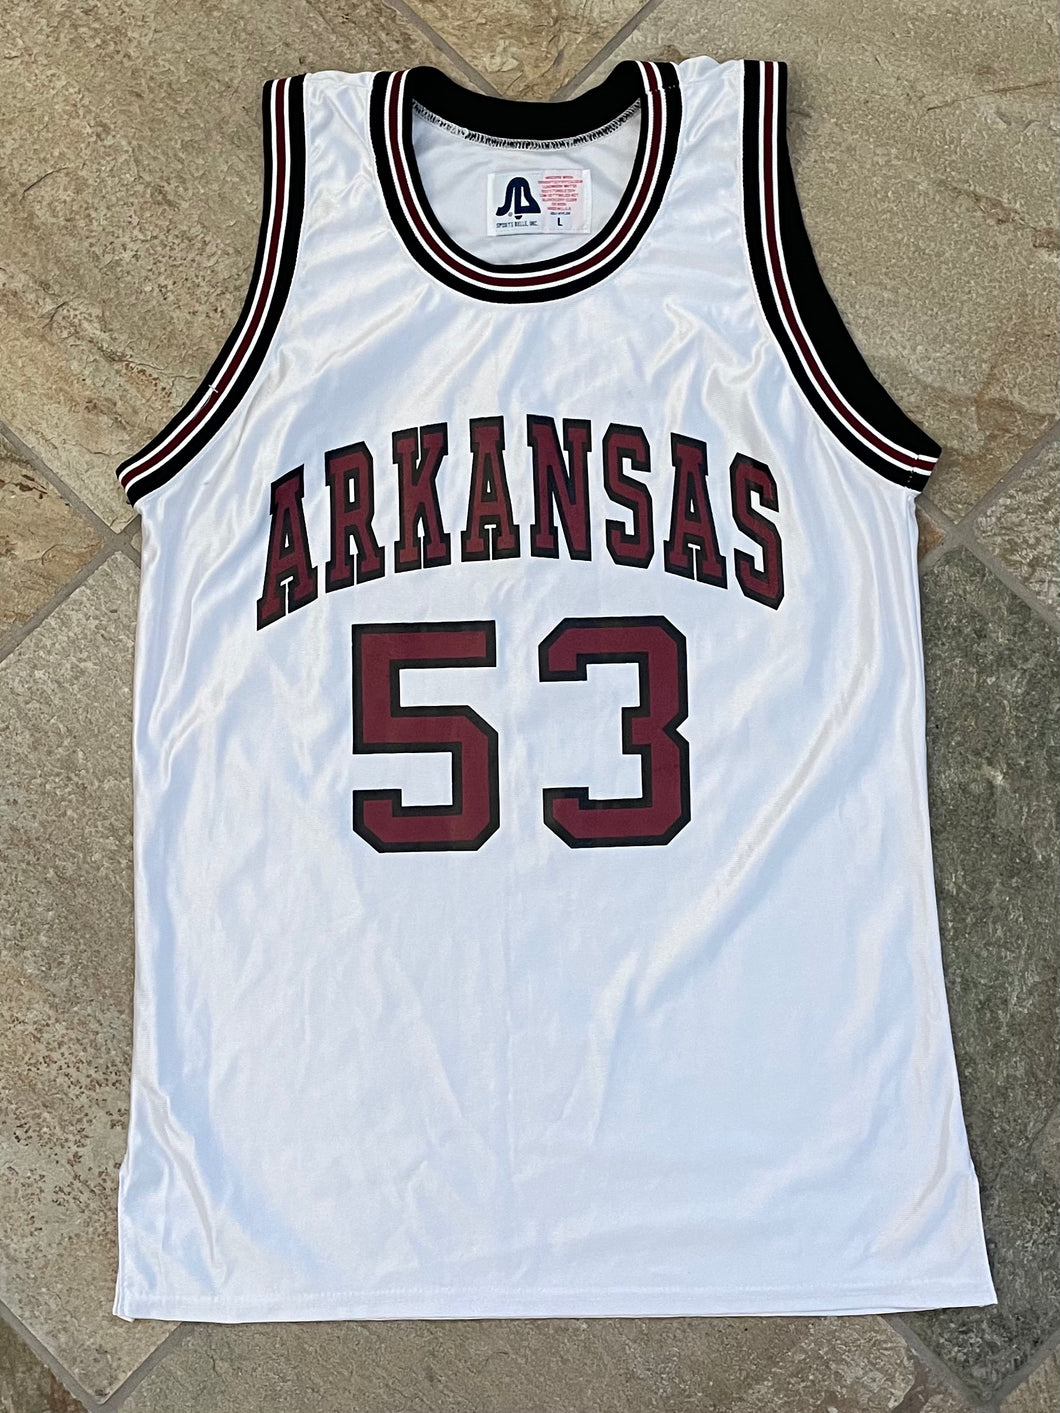 Vintage Arkansas Razorbacks Game Worn Basketball College Jersey, Size Large